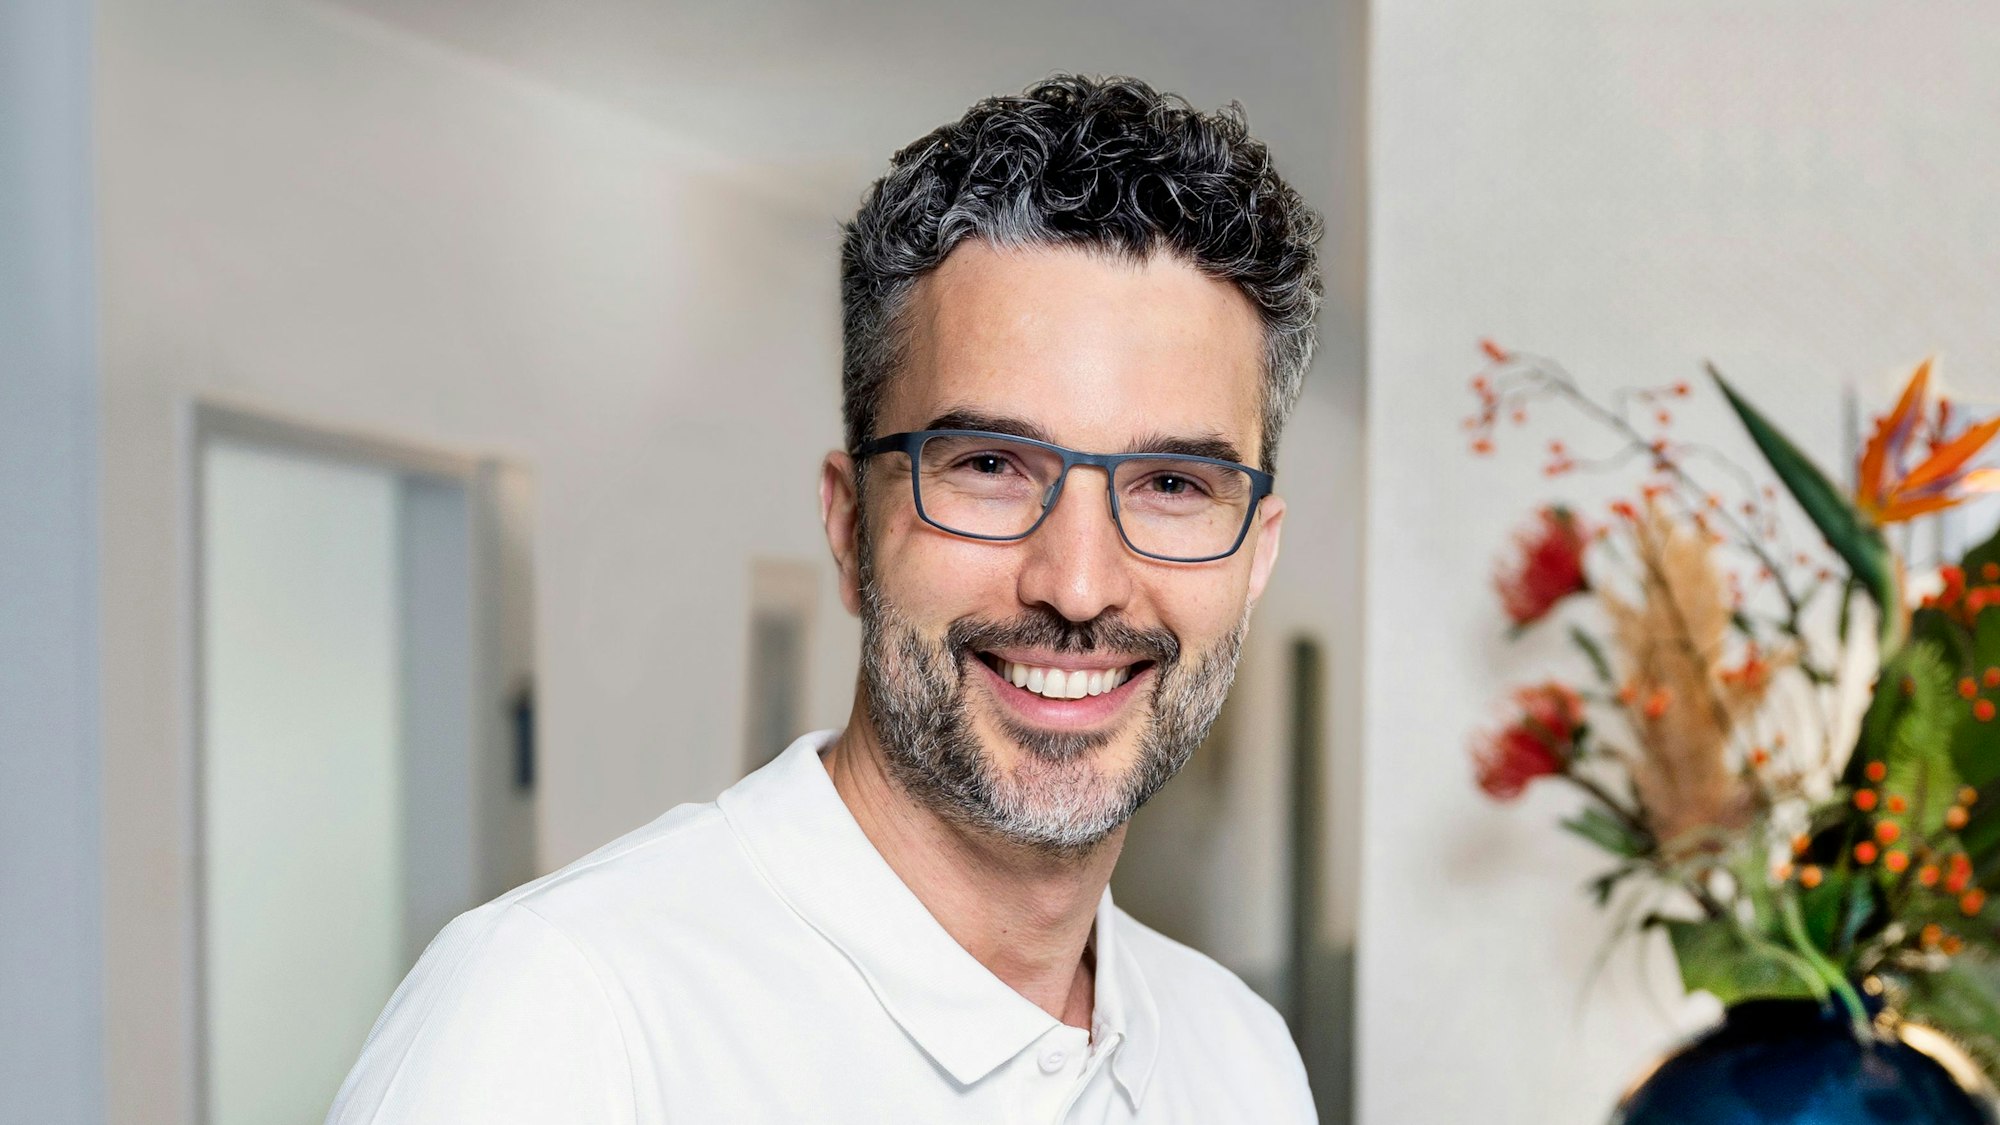 Christian Levejohann ist Zahnarzt in Köln und „wir helfen“-Unterstützer, er hat graumelierte Locken einen graumelierten Bart und trägt eine schwarze Brille.